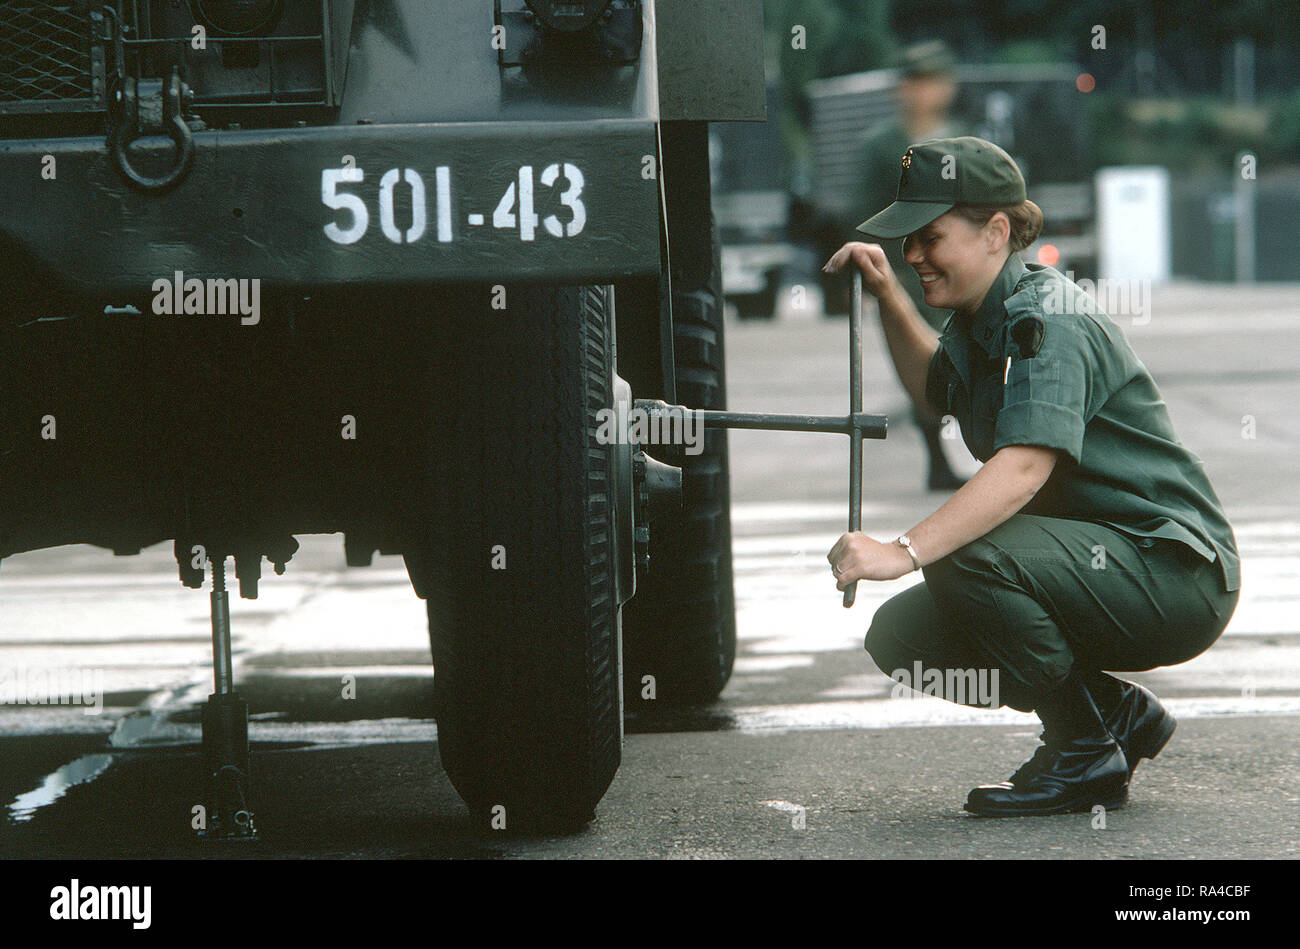 1974 - Una mujer soldado del ejército estadounidense se aprieta un tornillo de rueda en un vehículo militar. Foto de stock